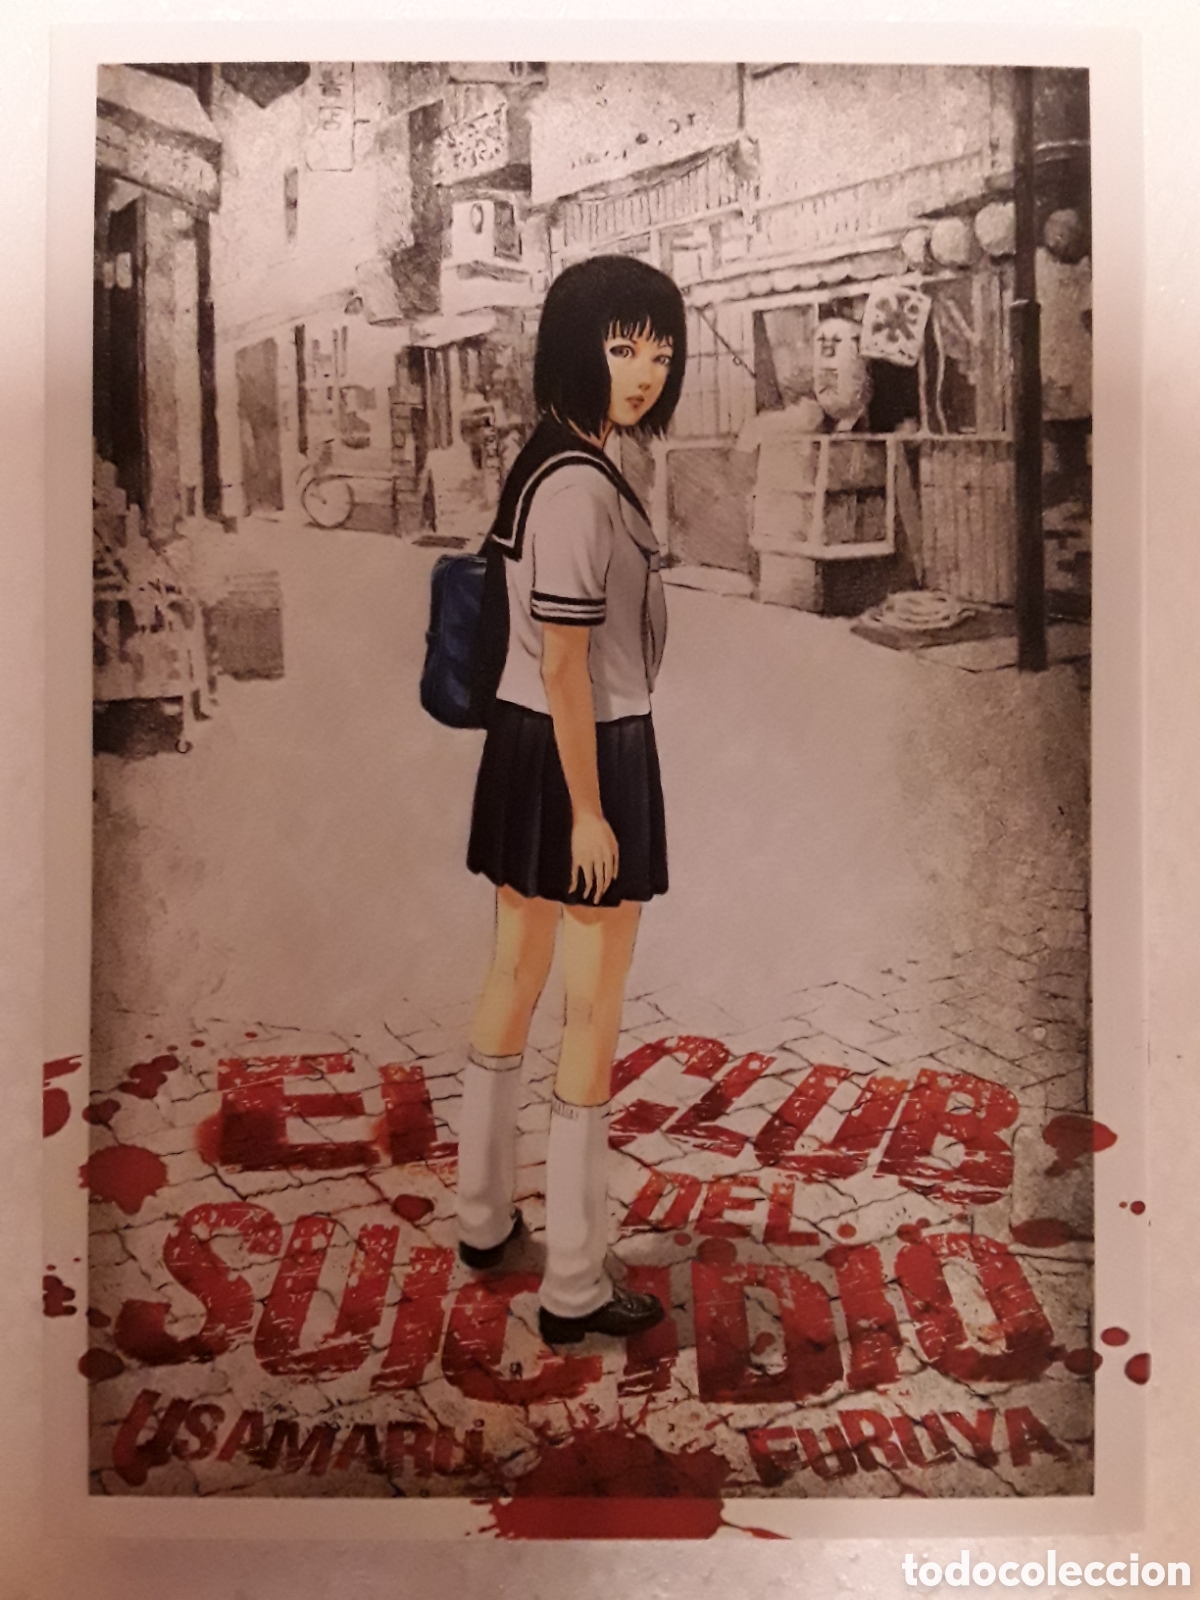 el club del suicidio - usamaru furuya - milky w - Buy Manga comics on  todocoleccion